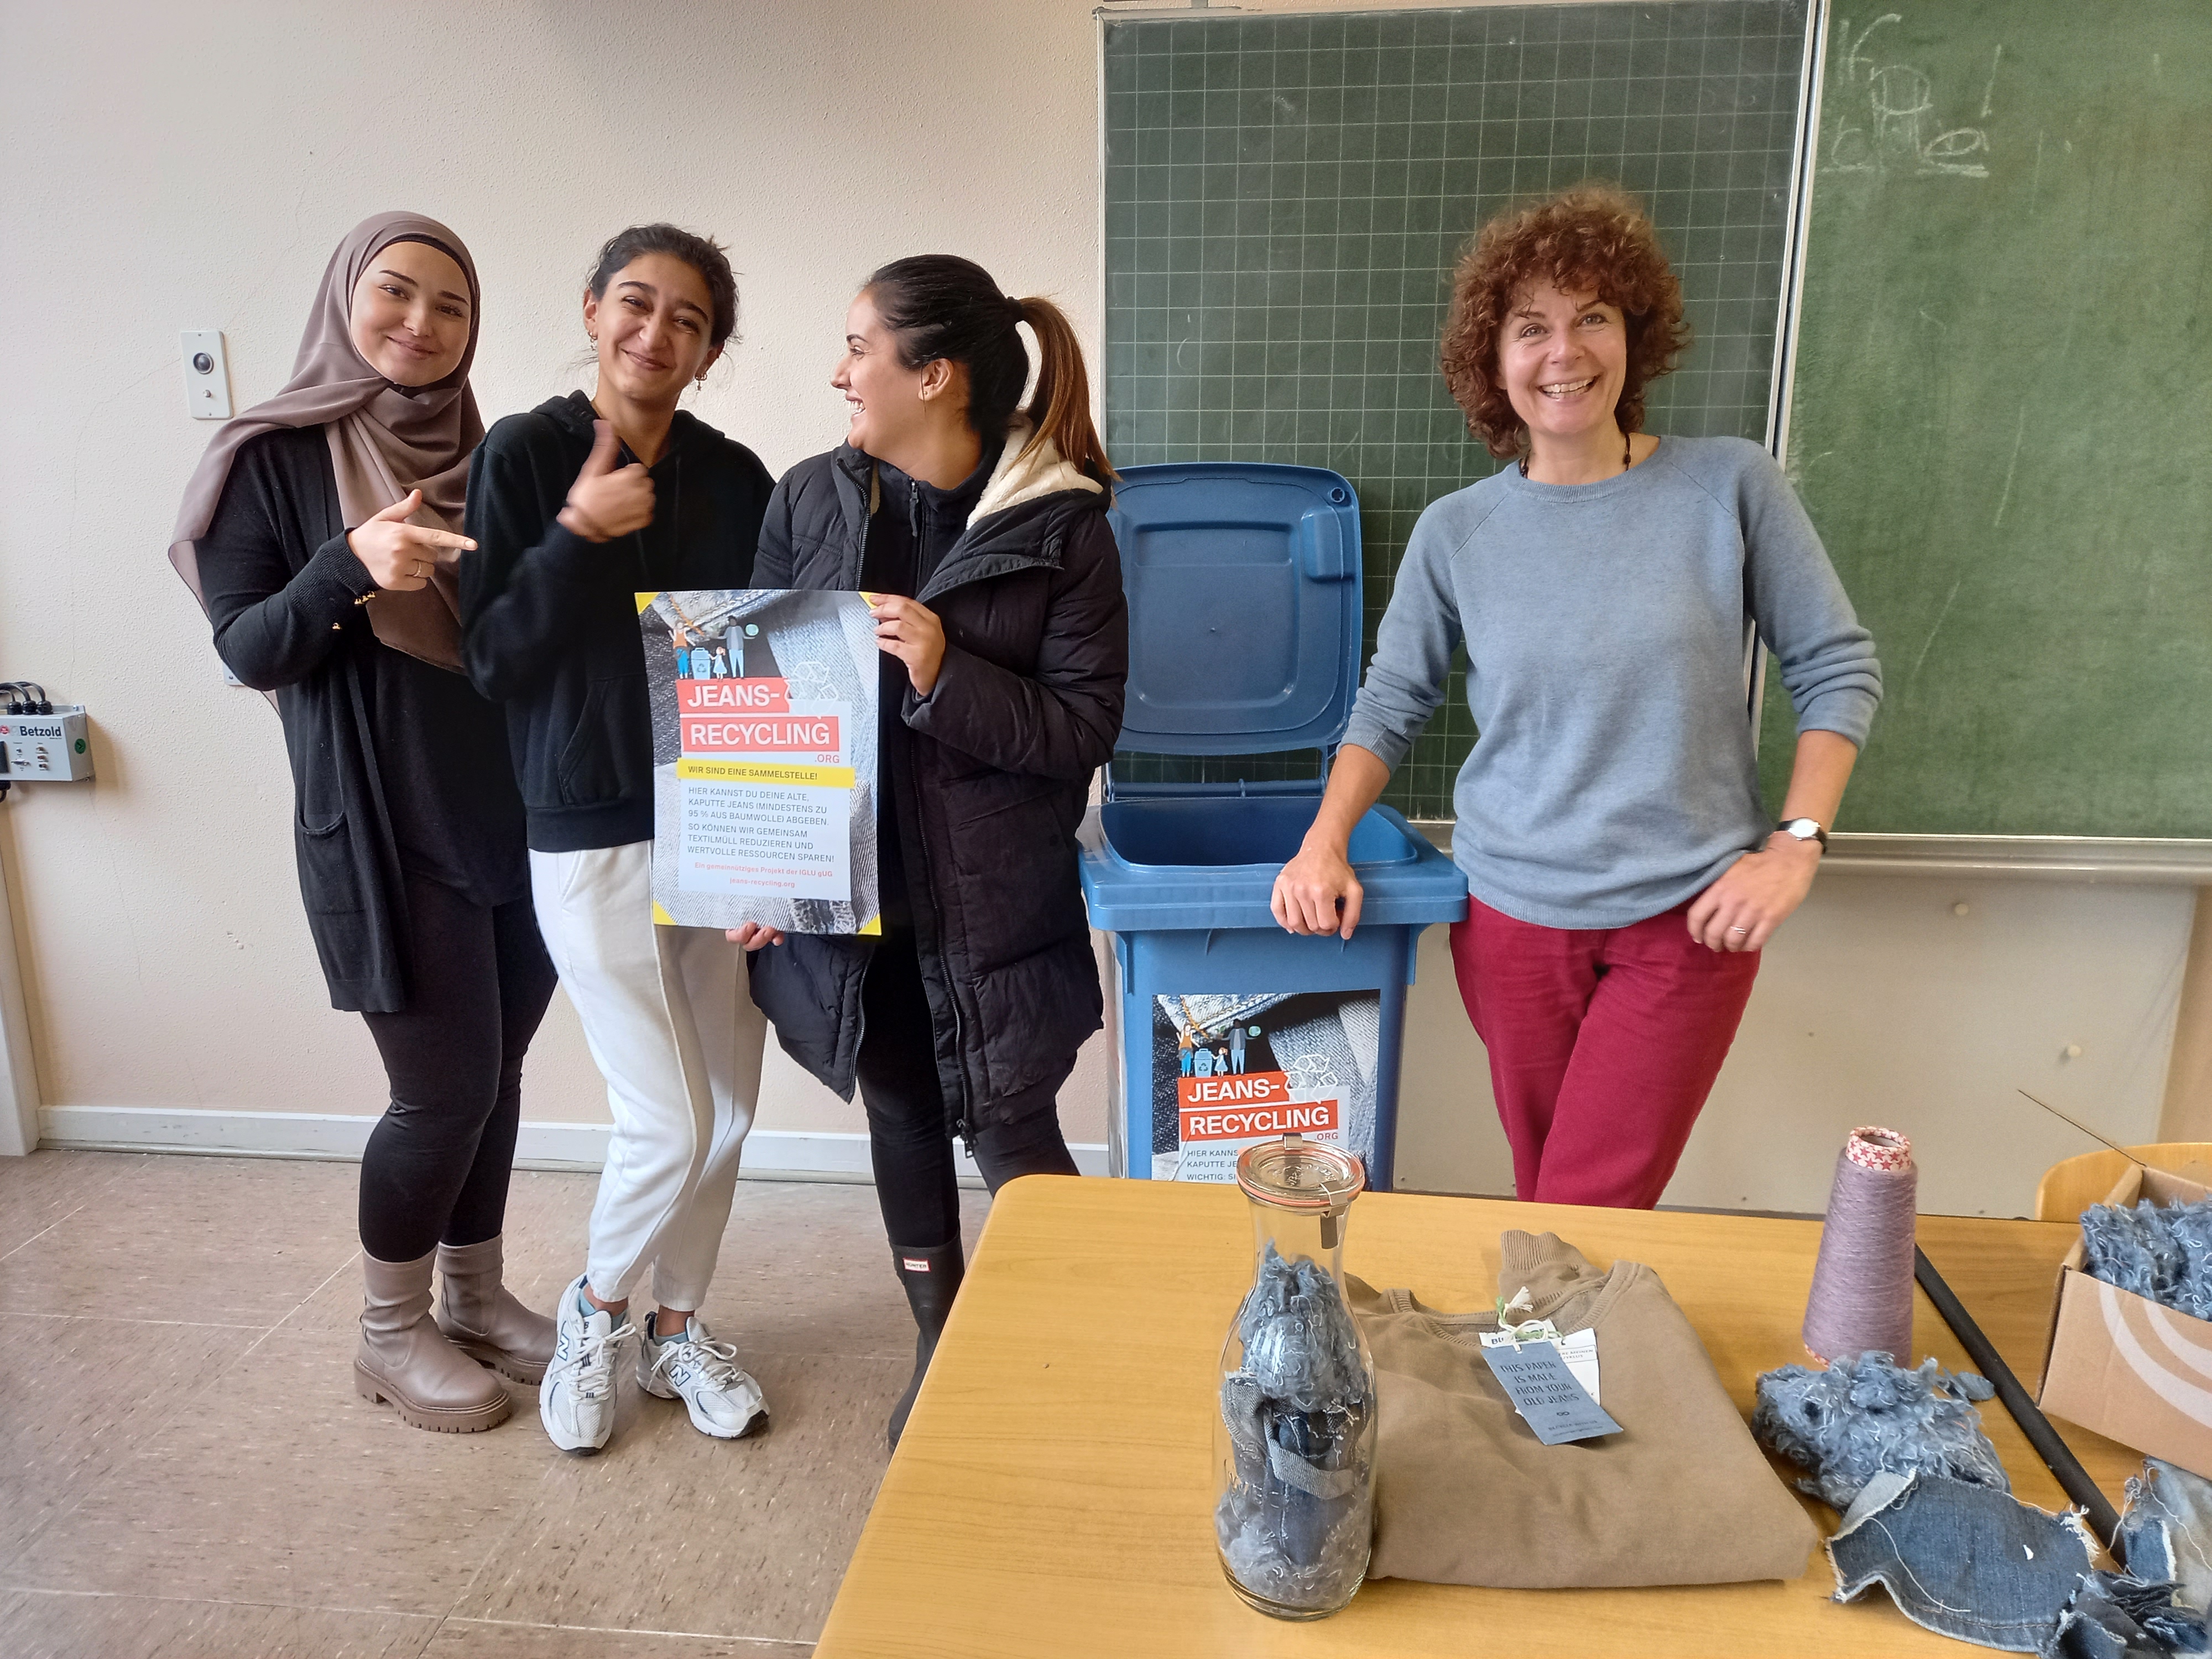 Frau Partyka vom IGLU gUG stellt im BBZ Grevenbroich der Oberstufe Kinderpflege das Projekt Jeans-Recycling vor.